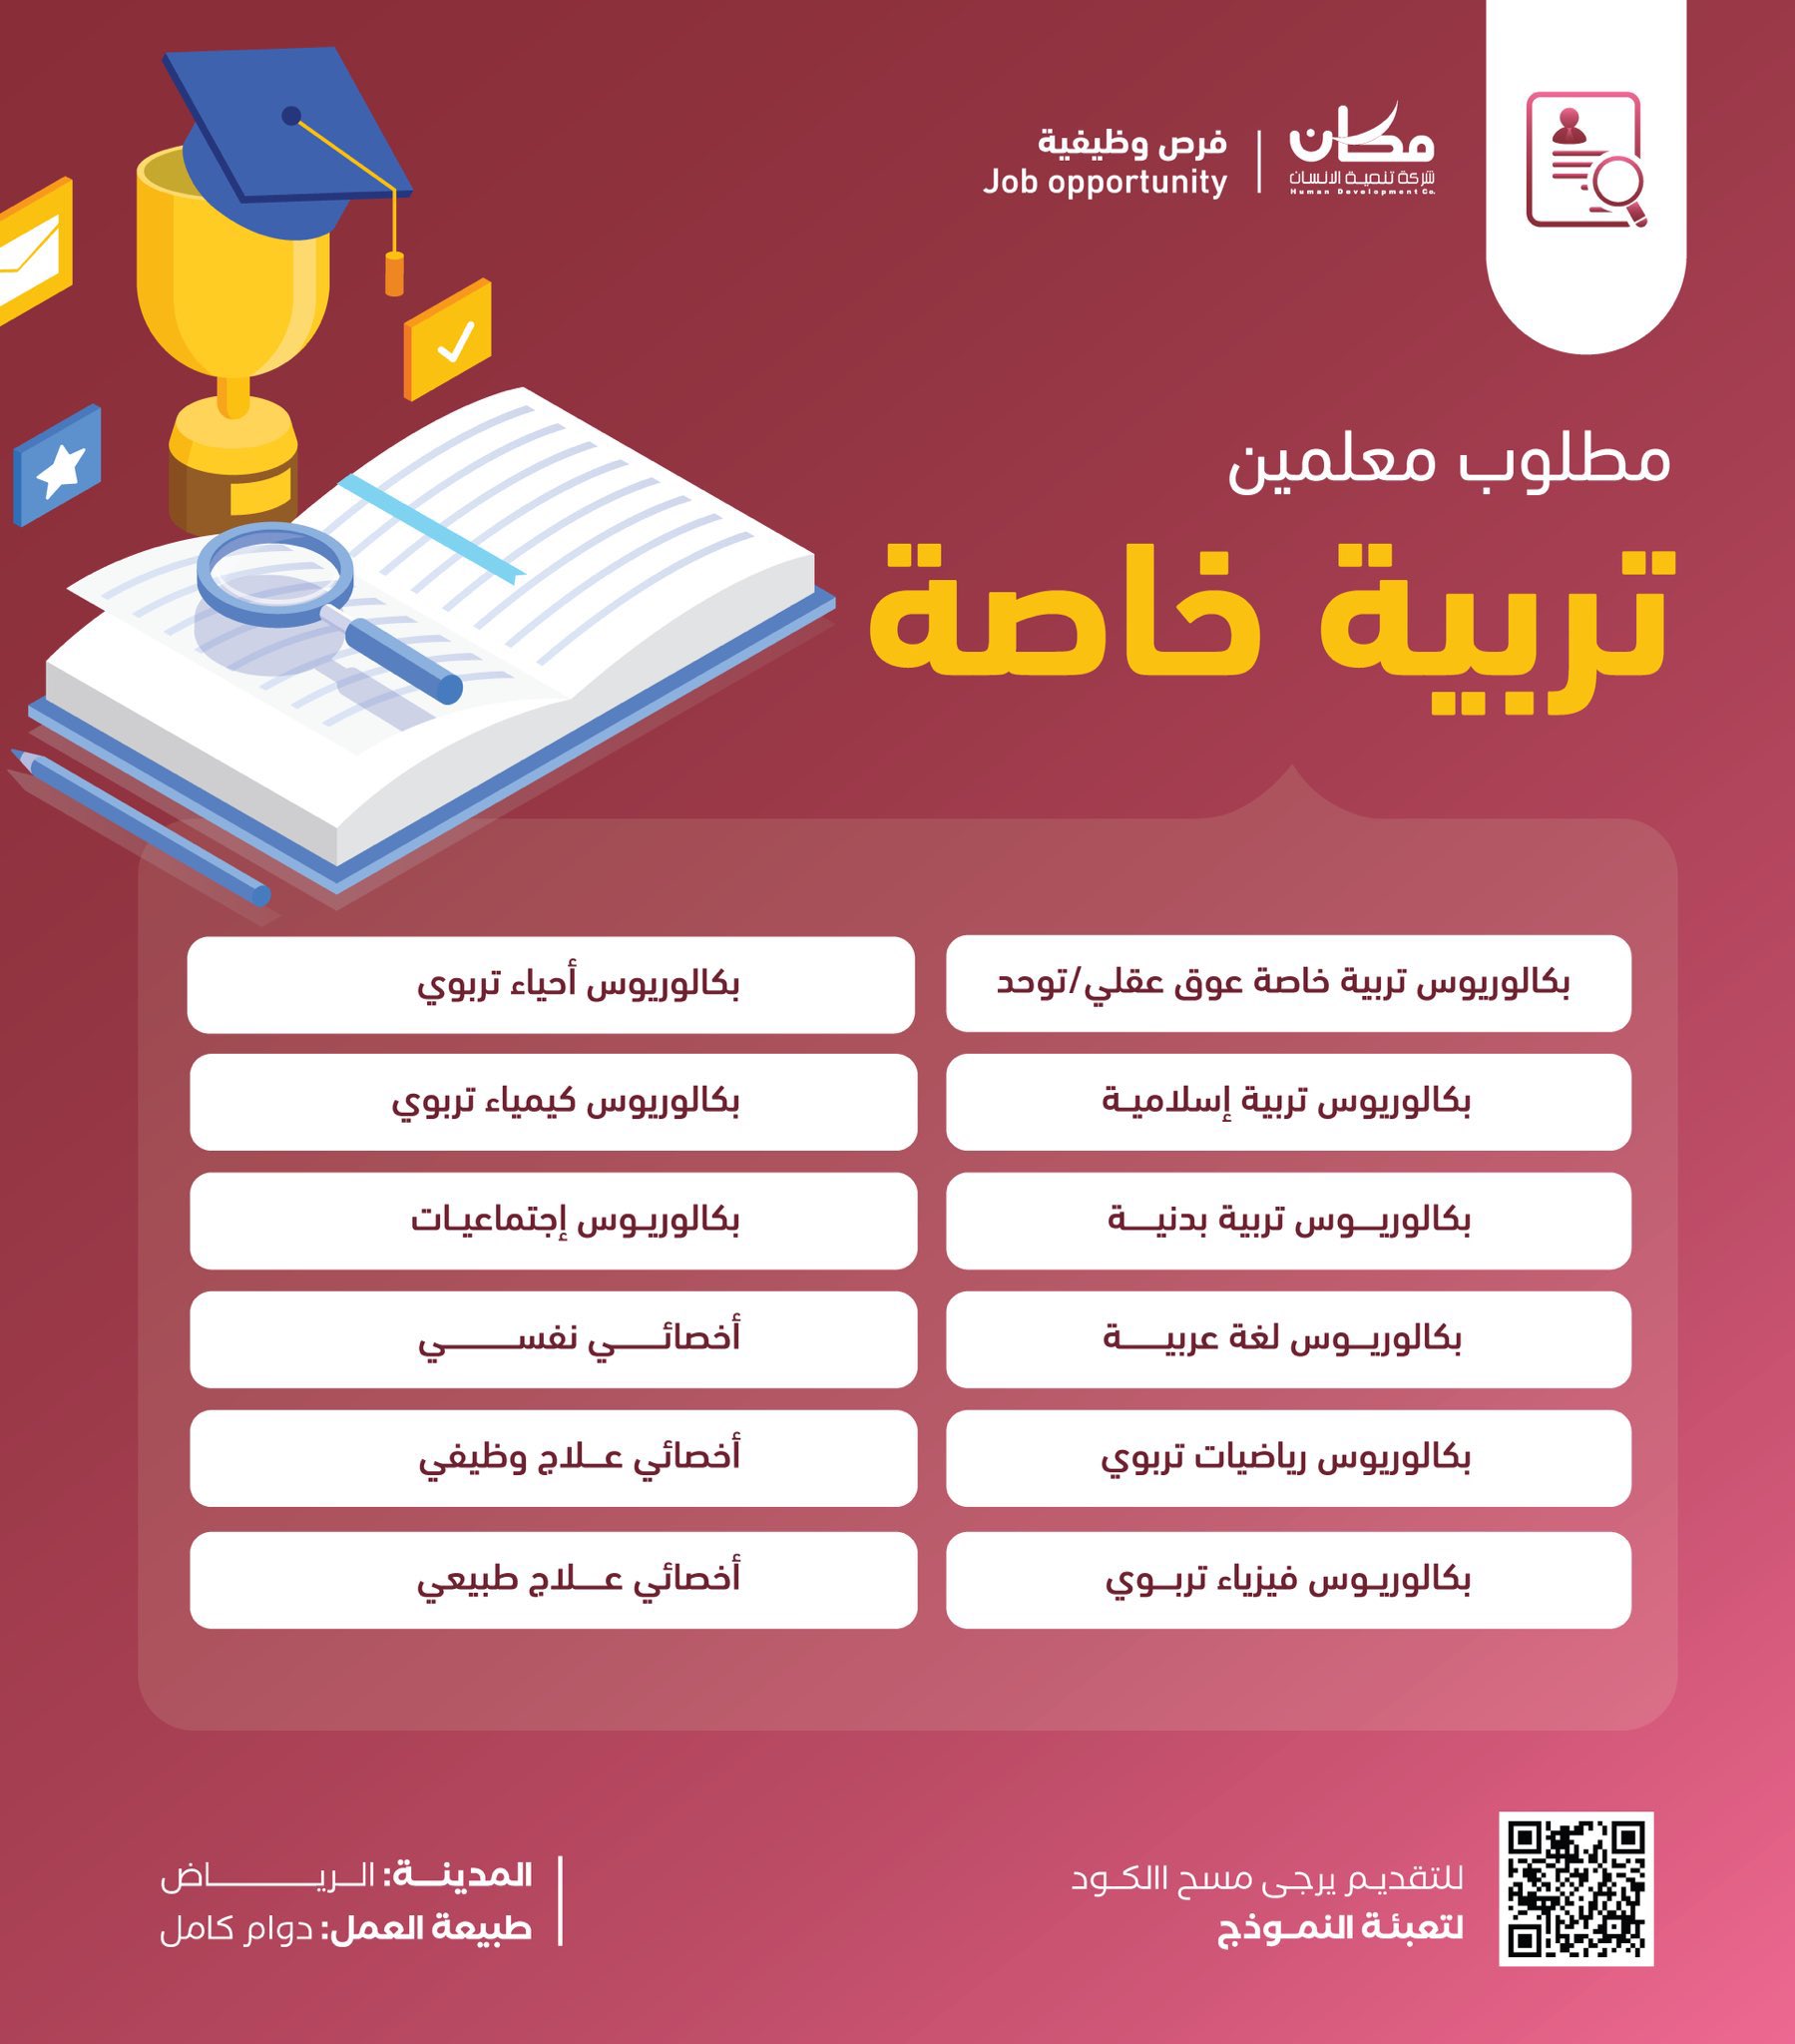 وظائف تعليمية في مختلف التخصصات بمدينة الرياض لدى شركة تنمية الإنسان (عبور) 3